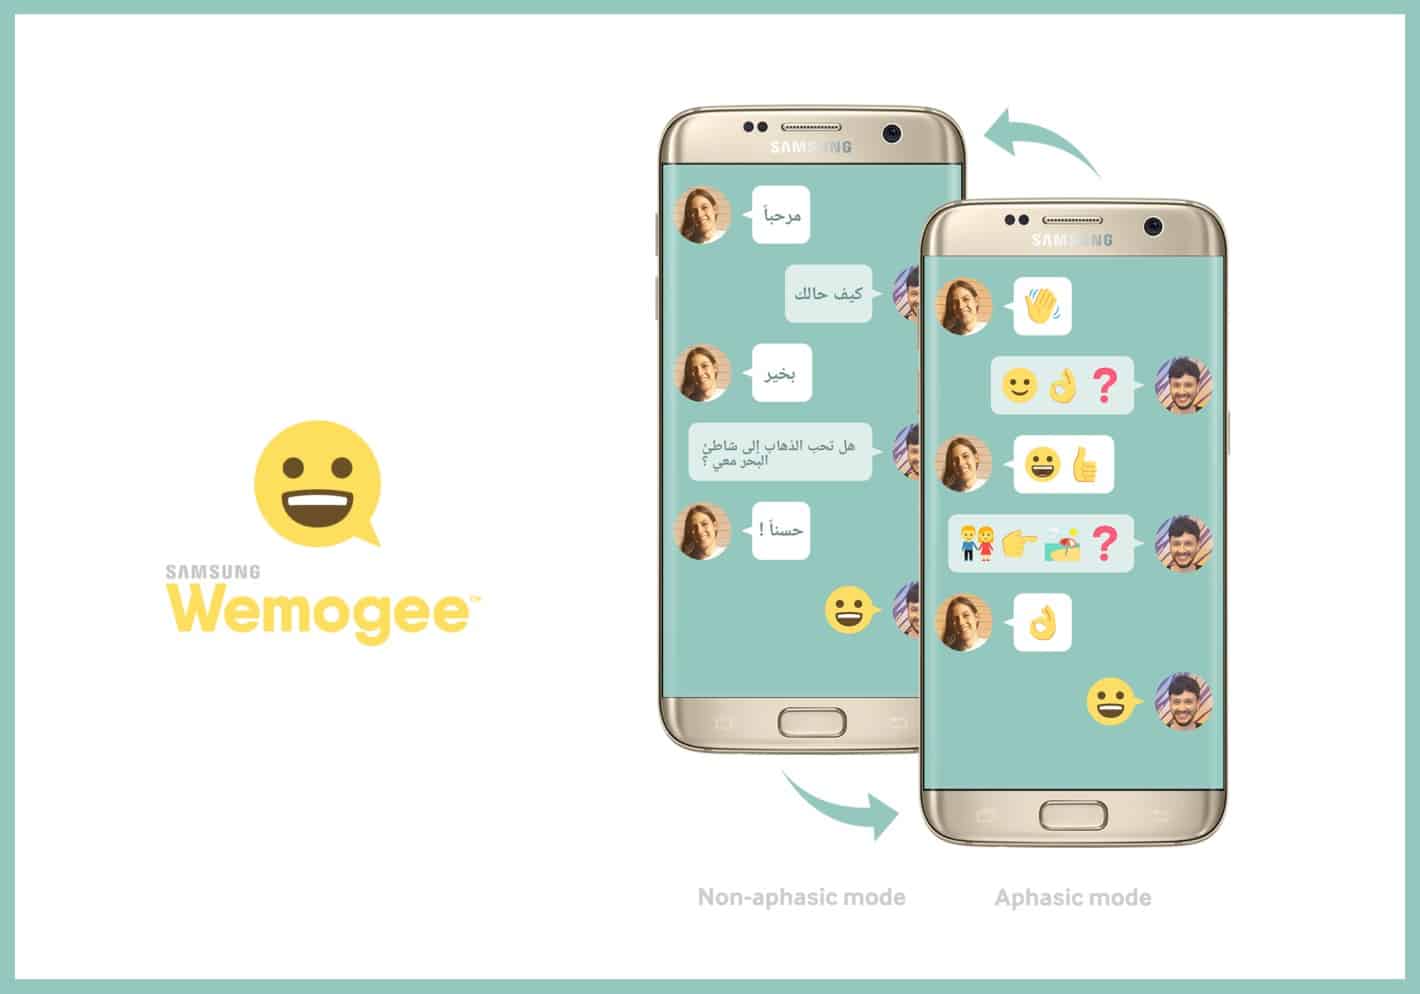 Samsung Wemogee è la prima app per chi ha difficoltà di espressione